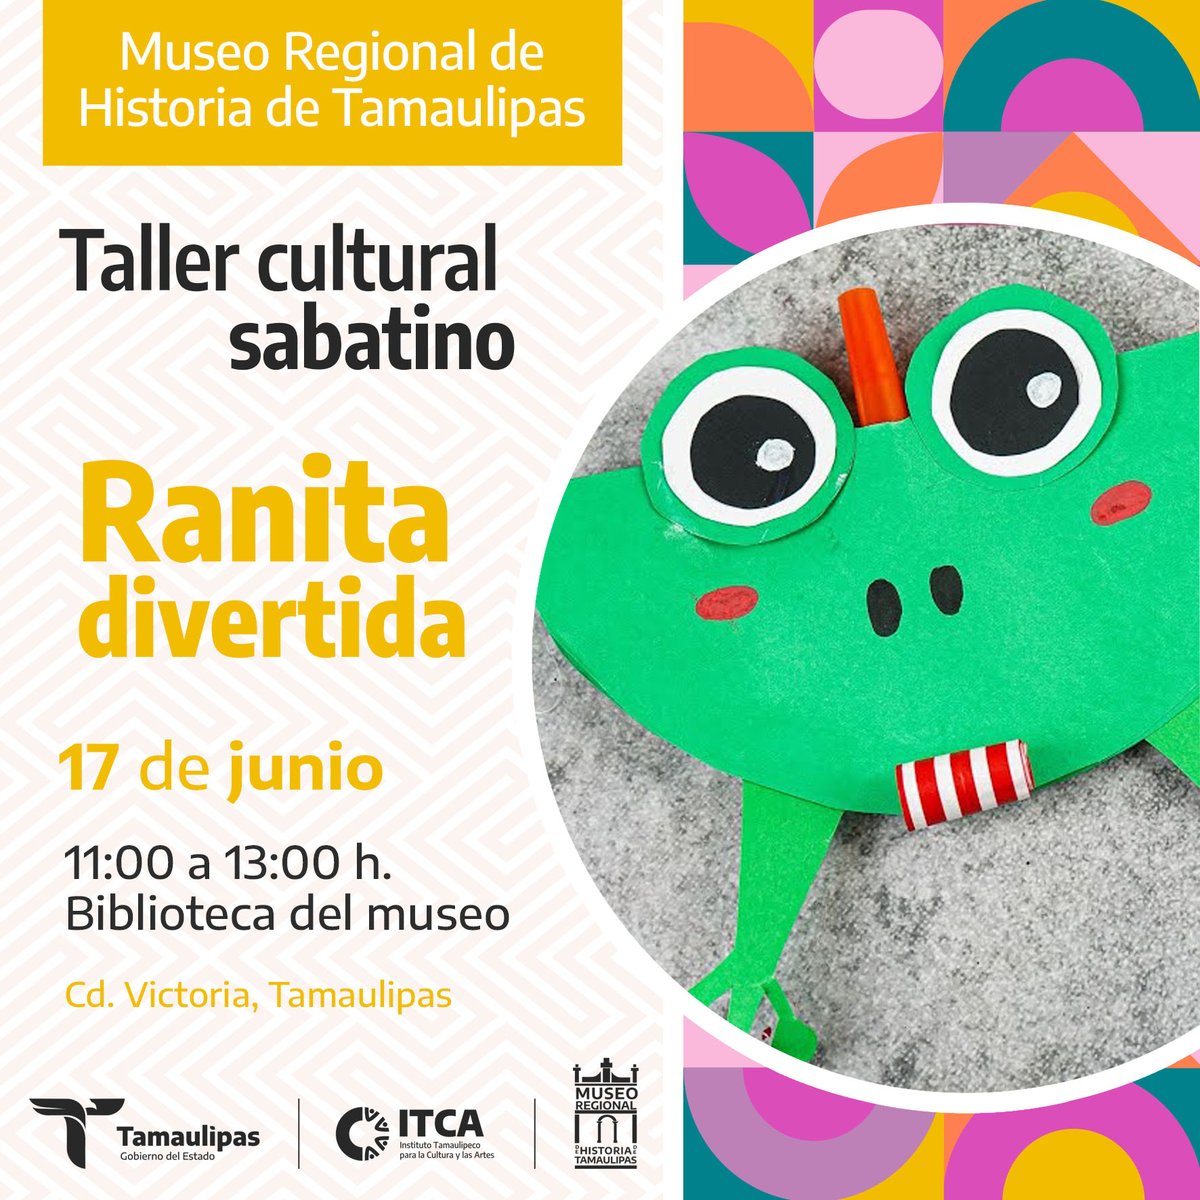 ¡Atención padres de familia! 
Los invitamos a venir con sus pequeñines al taller del próximo sábado llamado 'Ranita divertida'.
¡Asiste y pasa un rato agradable en el #MuseoRegional! 
#EntradaGratuita | 22 Allende, esq. | #CdVictoria